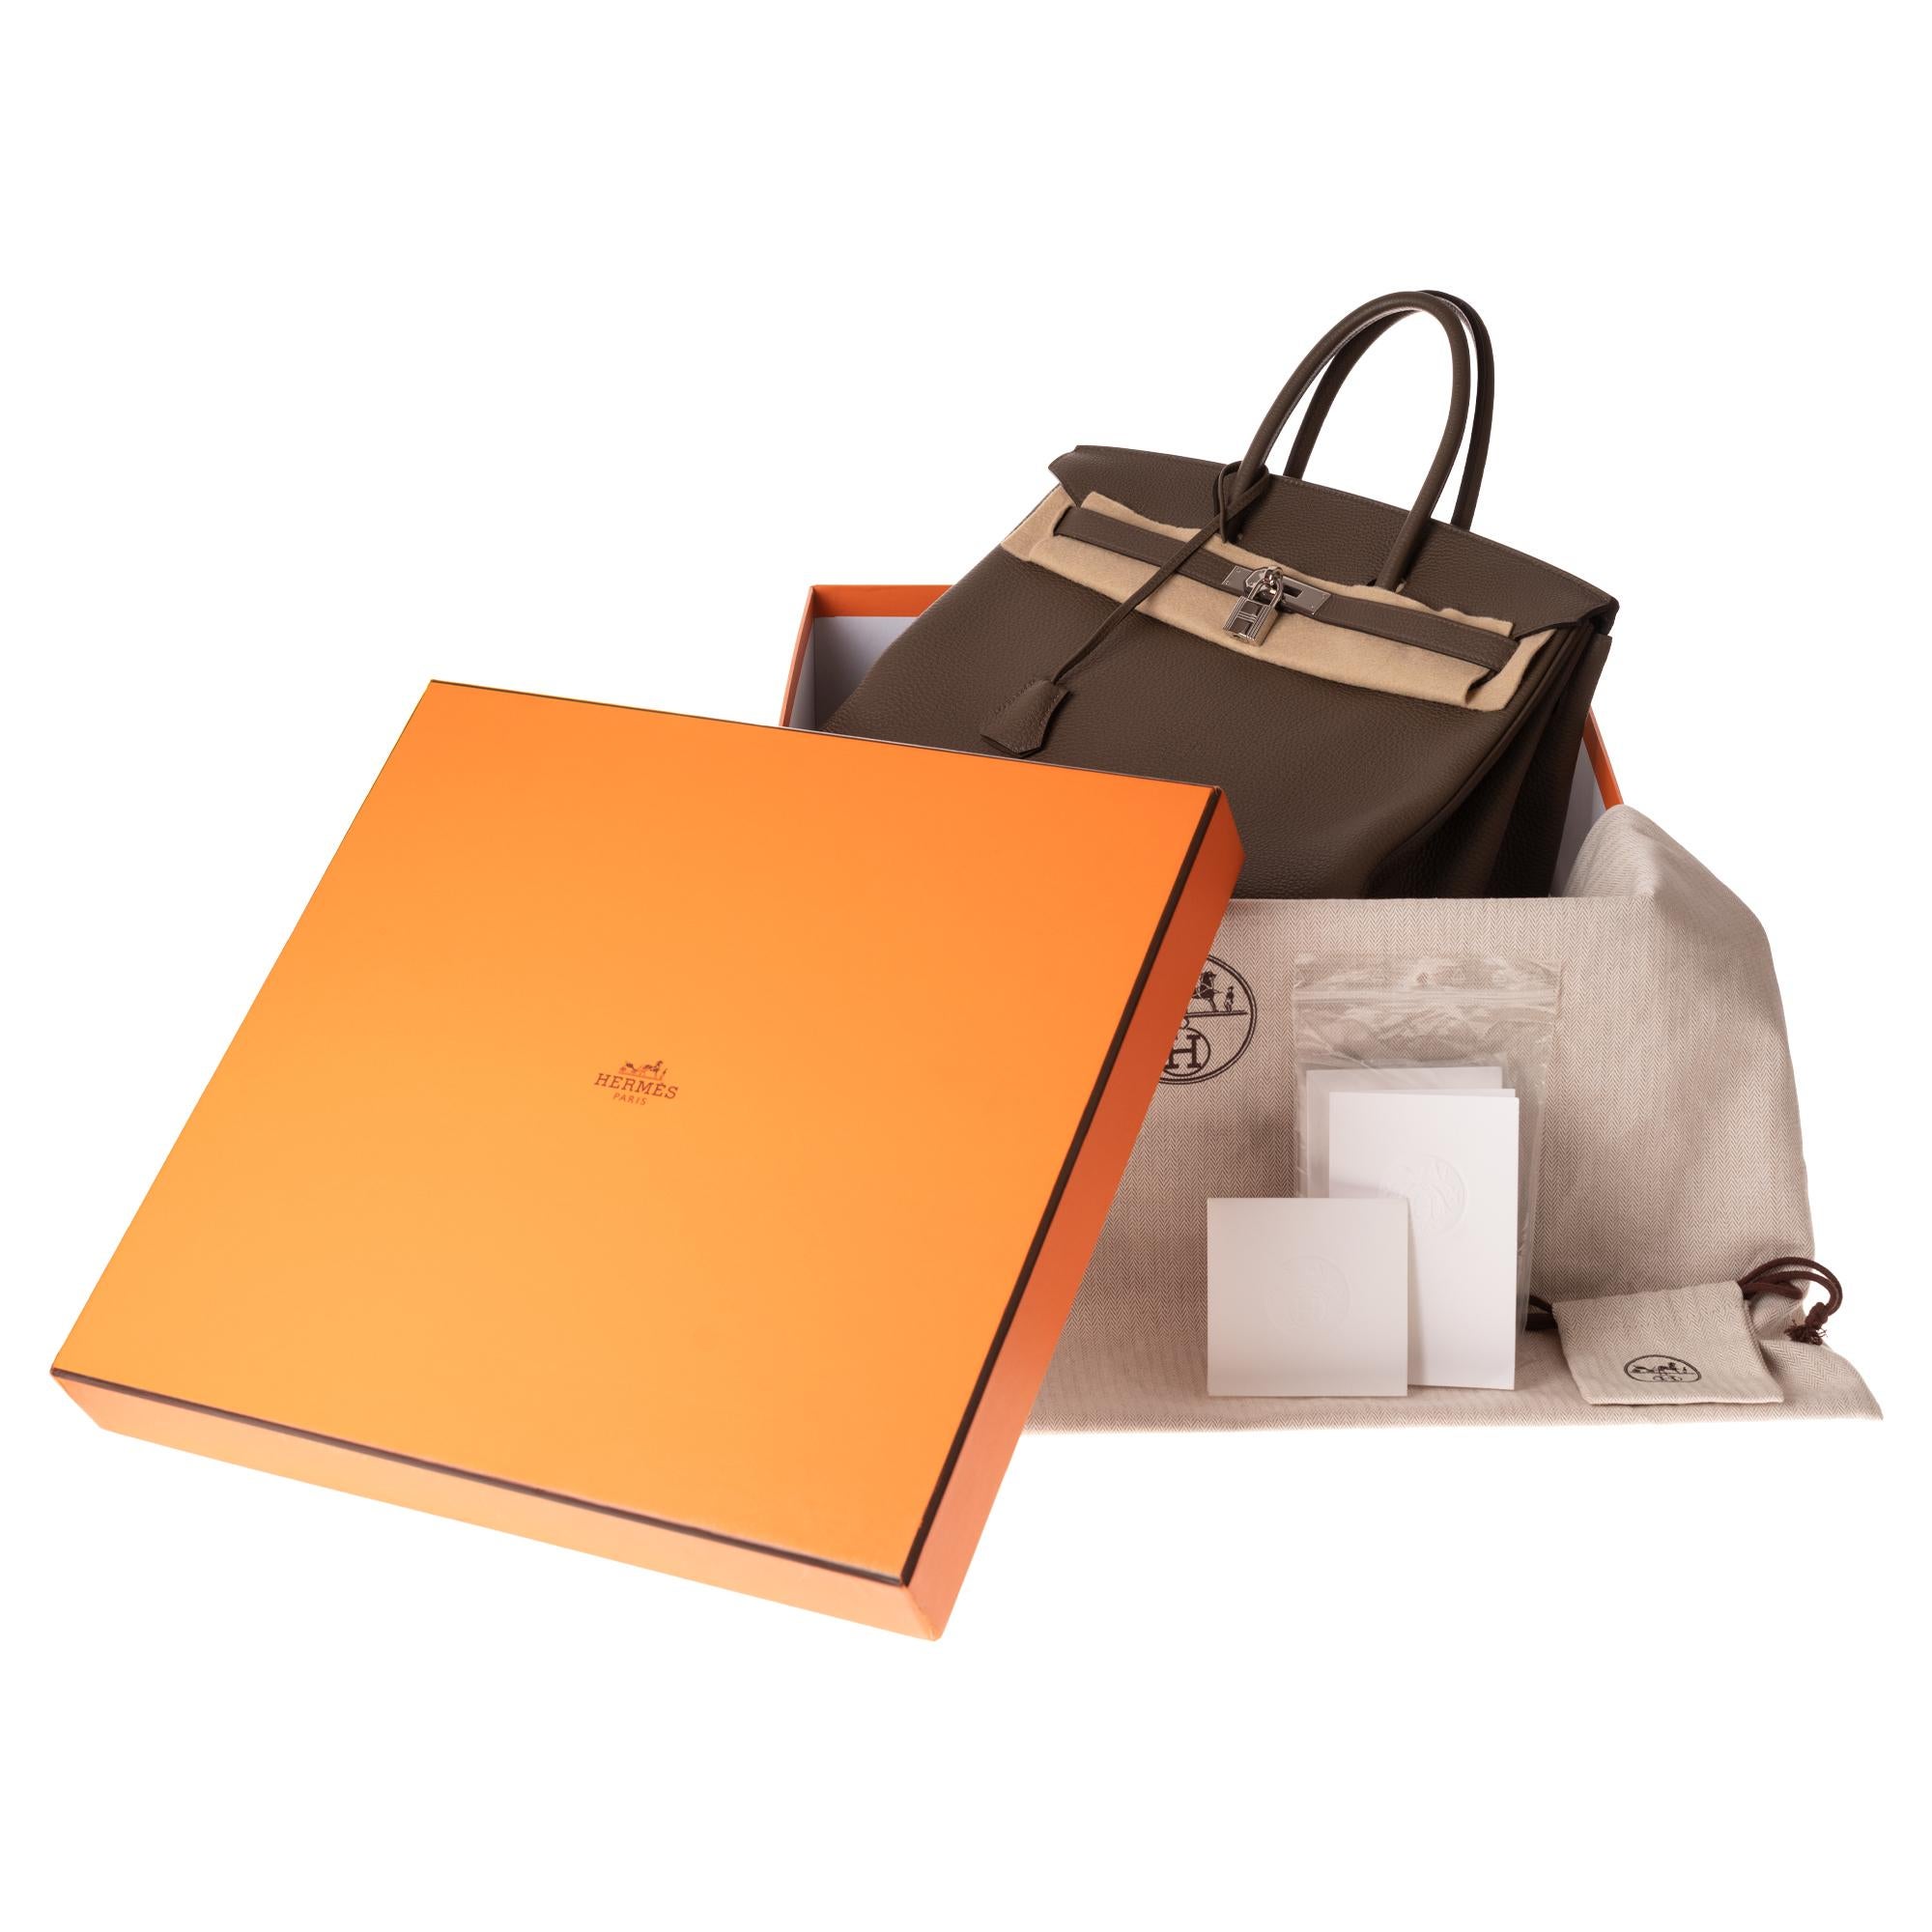 Hermès Birkin 35 Handtasche aus Togo-Leder in Taupe-Farbe und silberner Hardware! 7